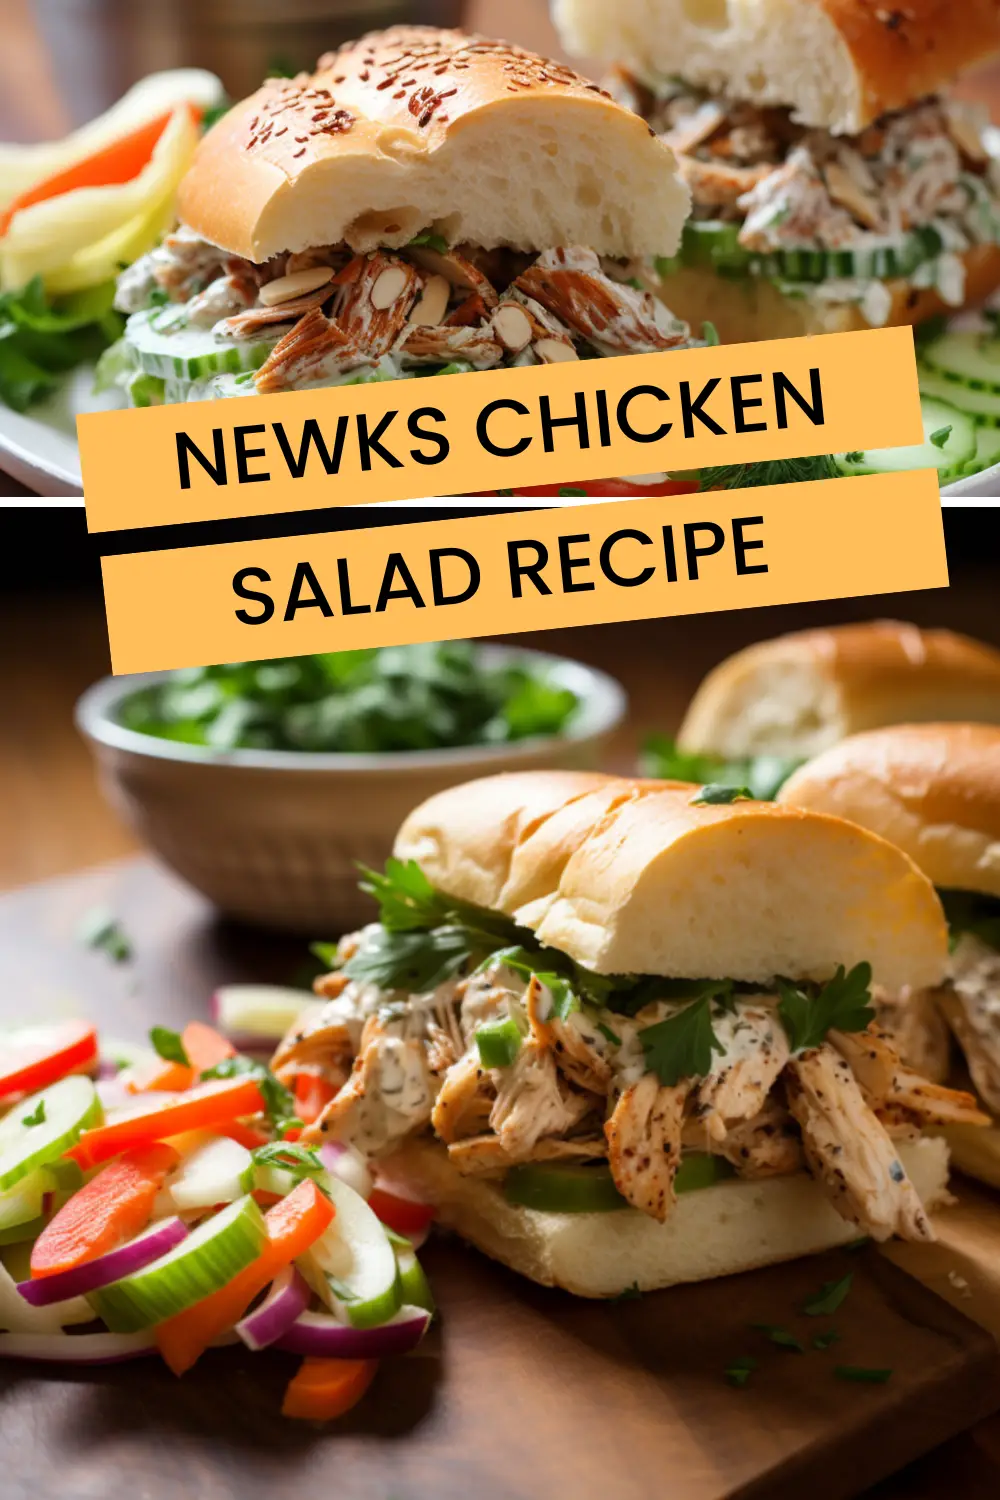 Newks Chicken Salad Recipe - Bex’s Kitchen